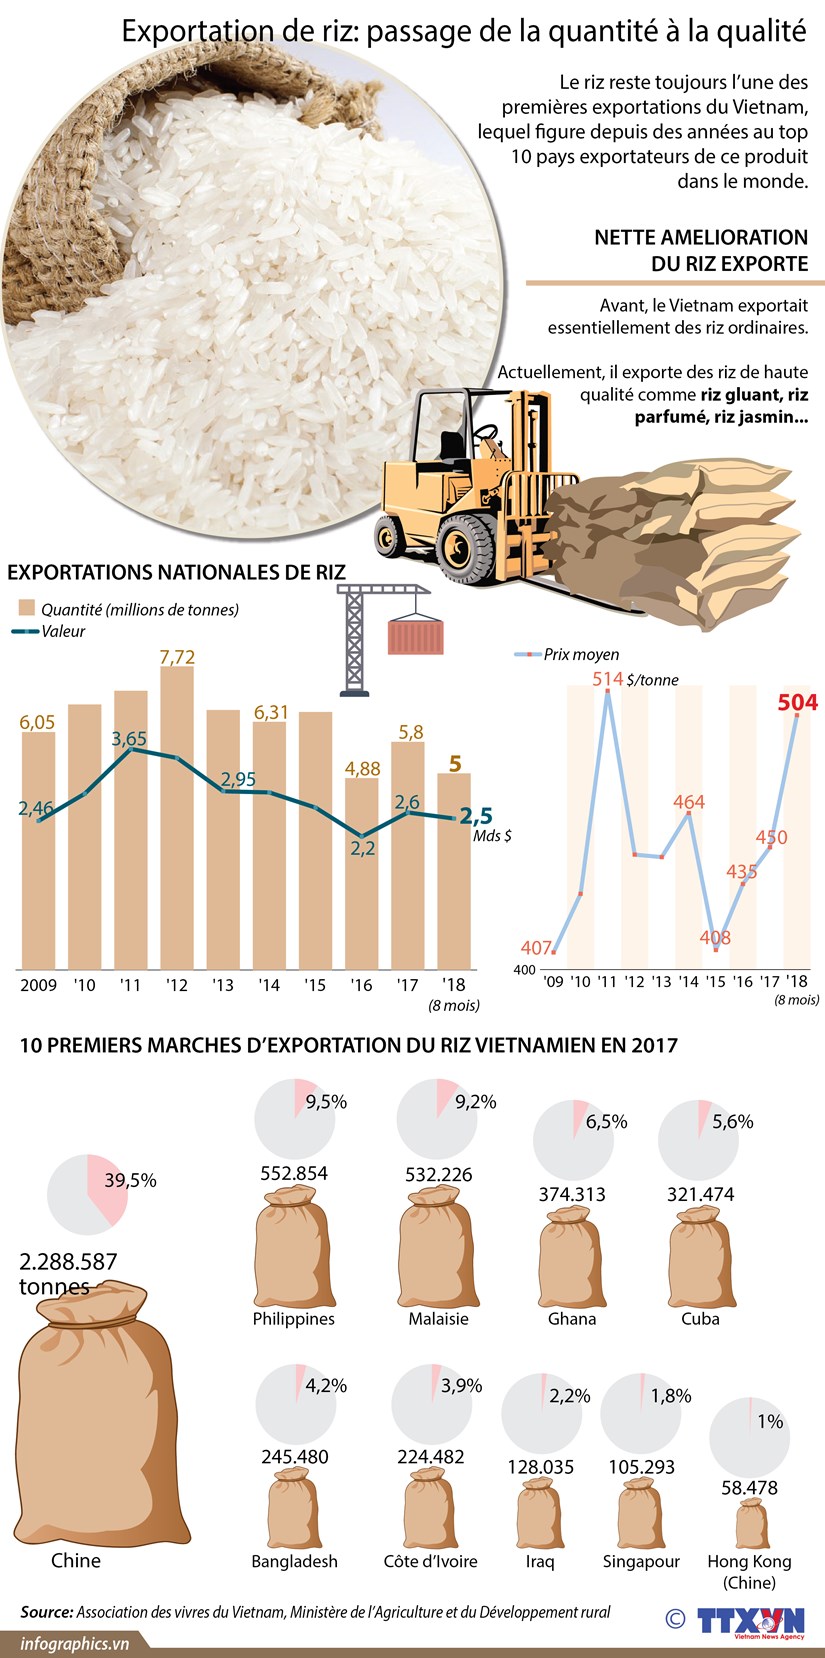 [Infographie] Exportation de riz: passage de la quantite a la qualite hinh anh 1